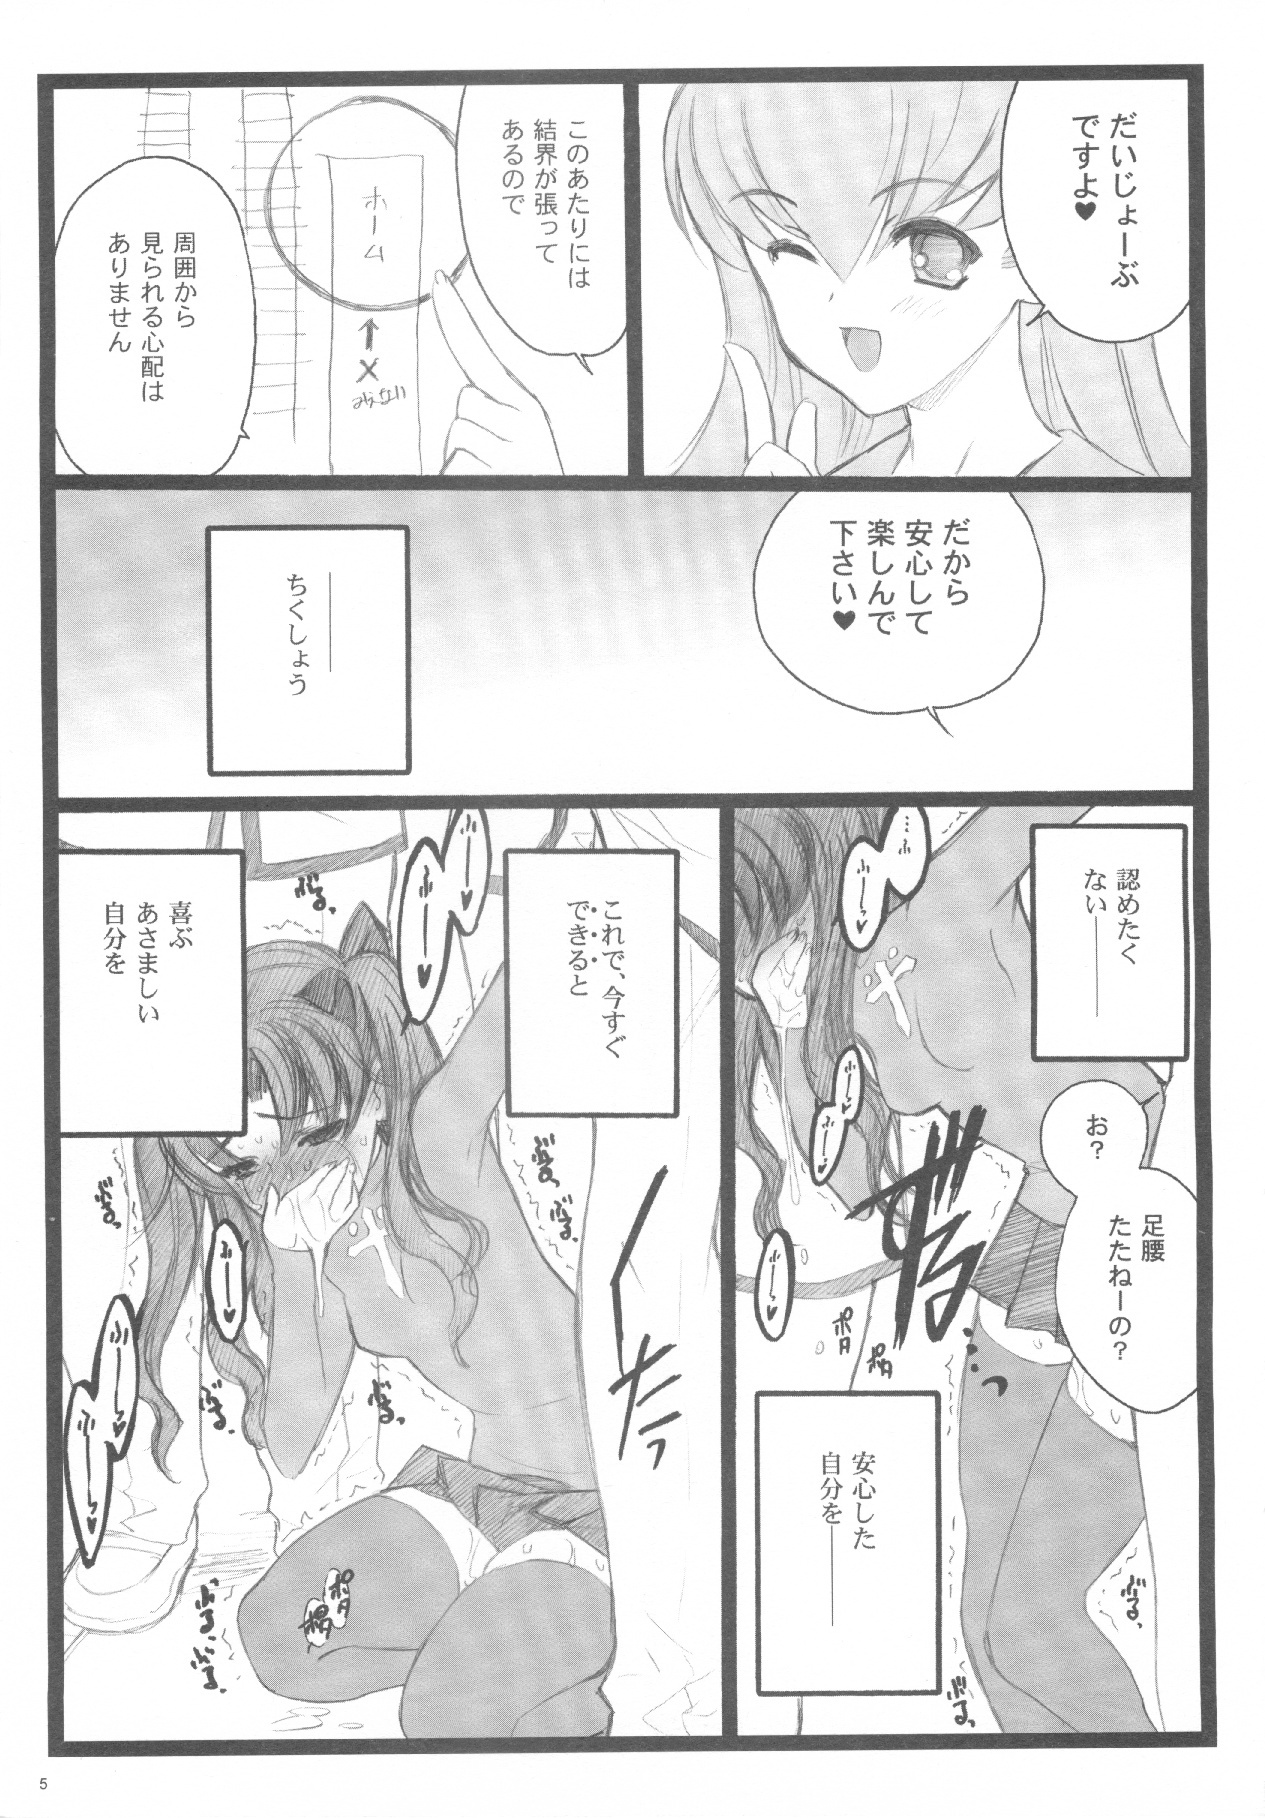 (C71) [Keumaya (Inoue Junichi)] Walpurugisnacht 3 / Walpurgis no Yoru 3 (Fate/stay night) page 4 full